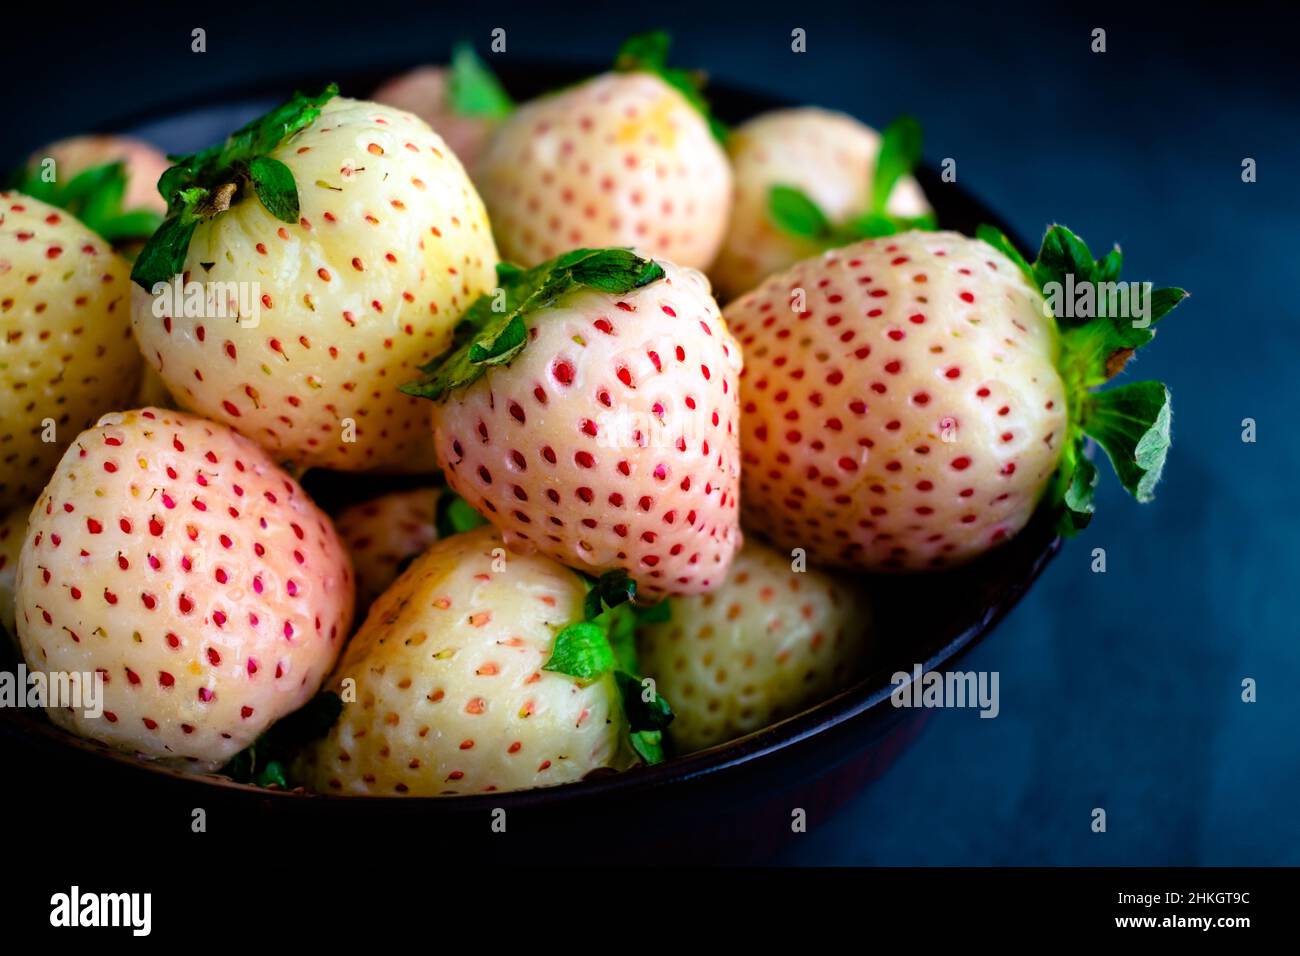 Frisch gewaschene Pineberries in einer Holzschüssel: Nahaufnahme von feuchten weißen Erdbeeren in einer dunklen Holzschüssel Stockfoto